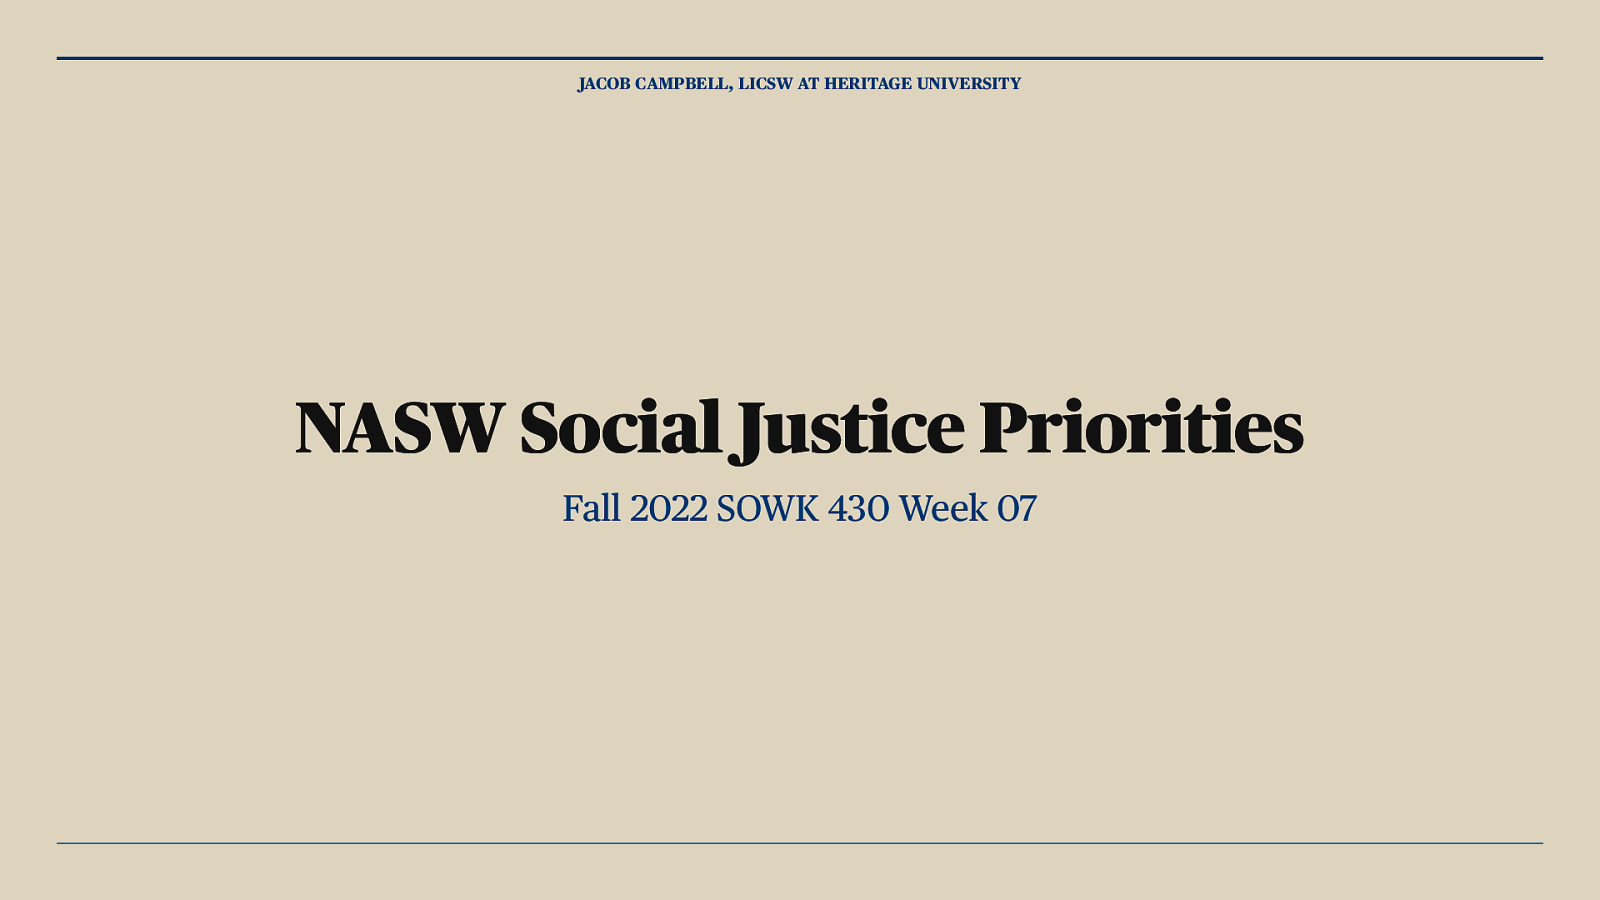 Fall 2022 SOWK 430 Week 07 - NASW Social Justice Priorities